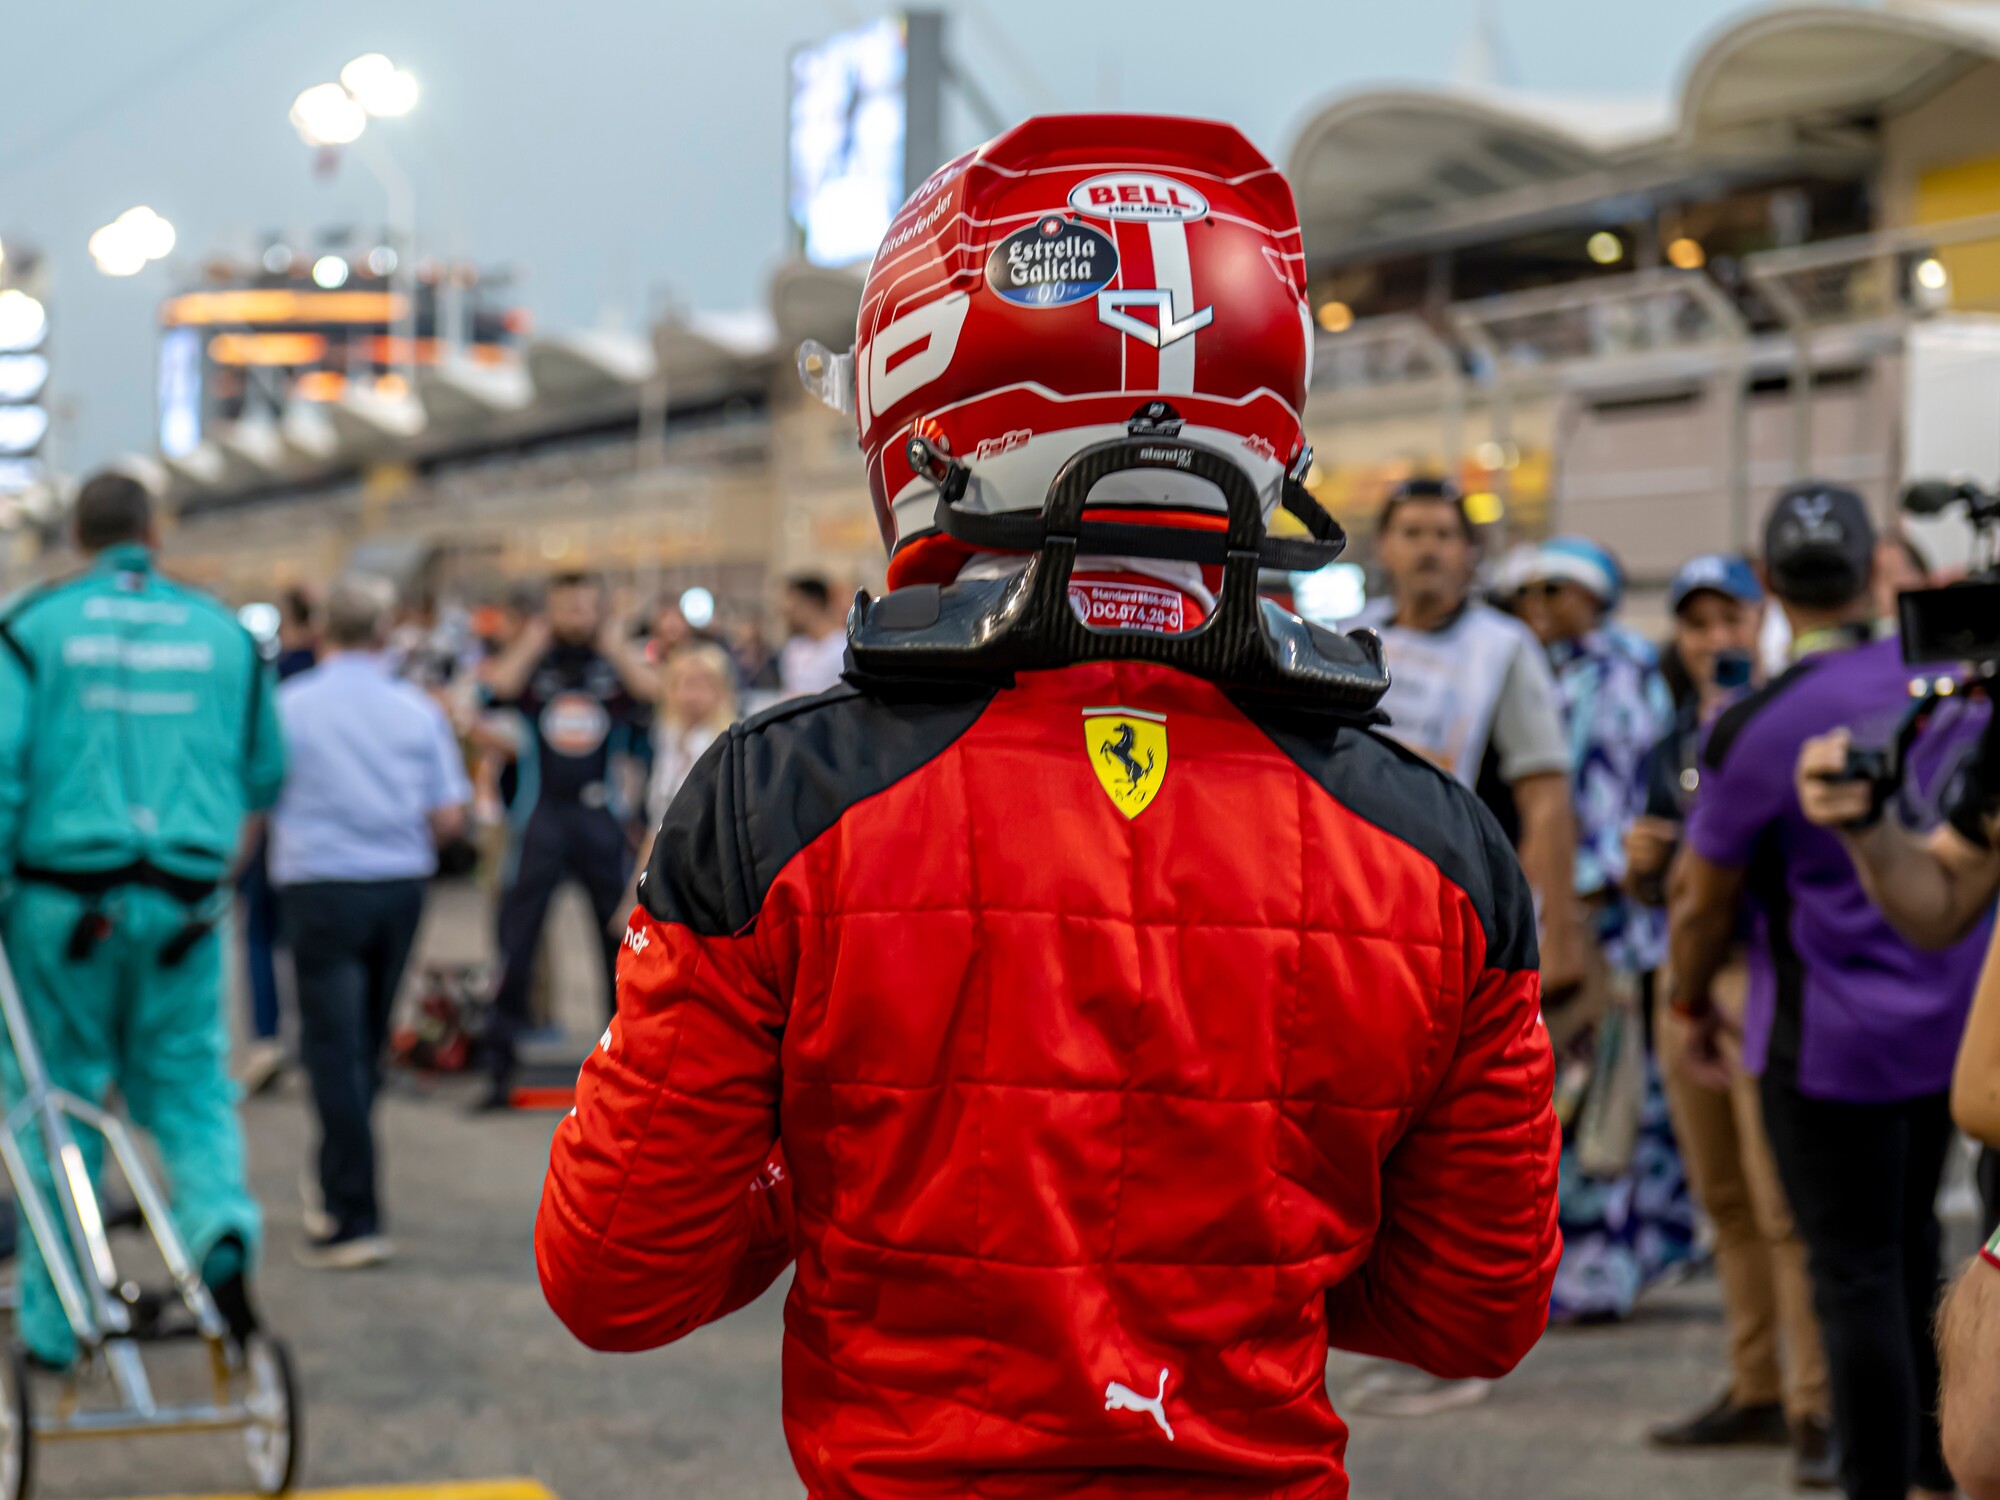 Ferrari victime d'un ransomware : que s'est-il passé ?